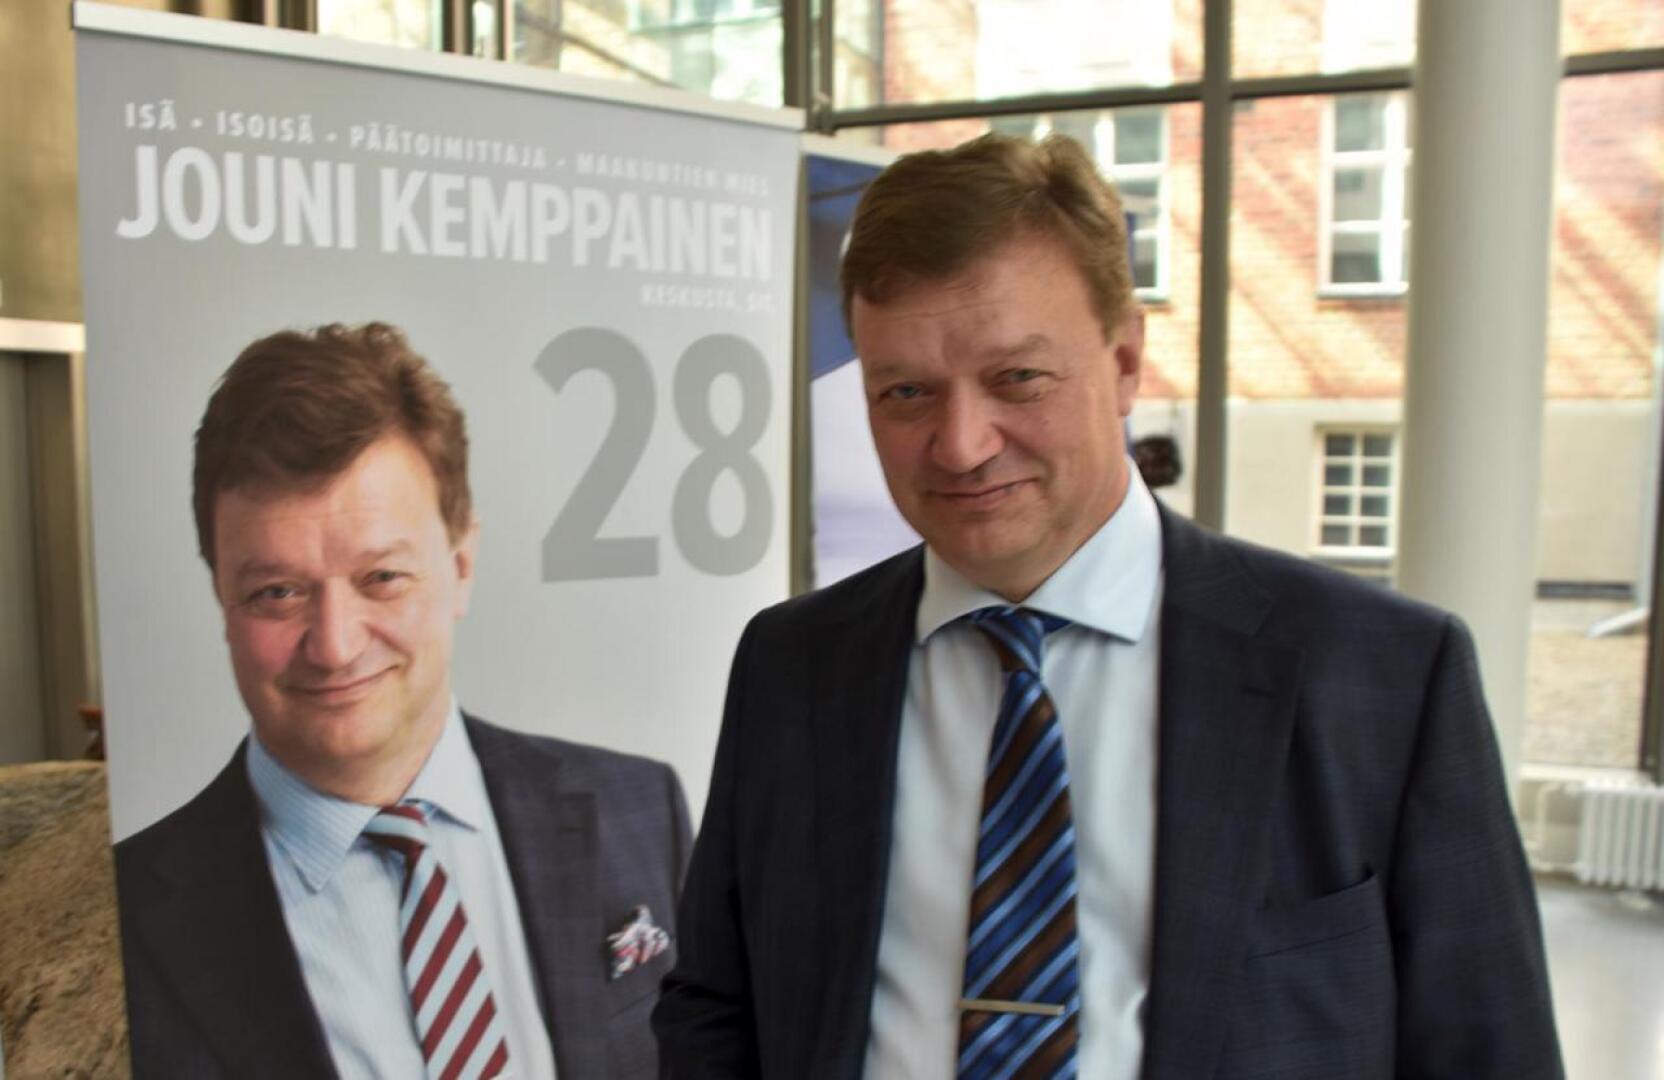 Eurovaaliehdokas Jouni Kemppainen kampanjoi alkuviikosta Kaustisella. 